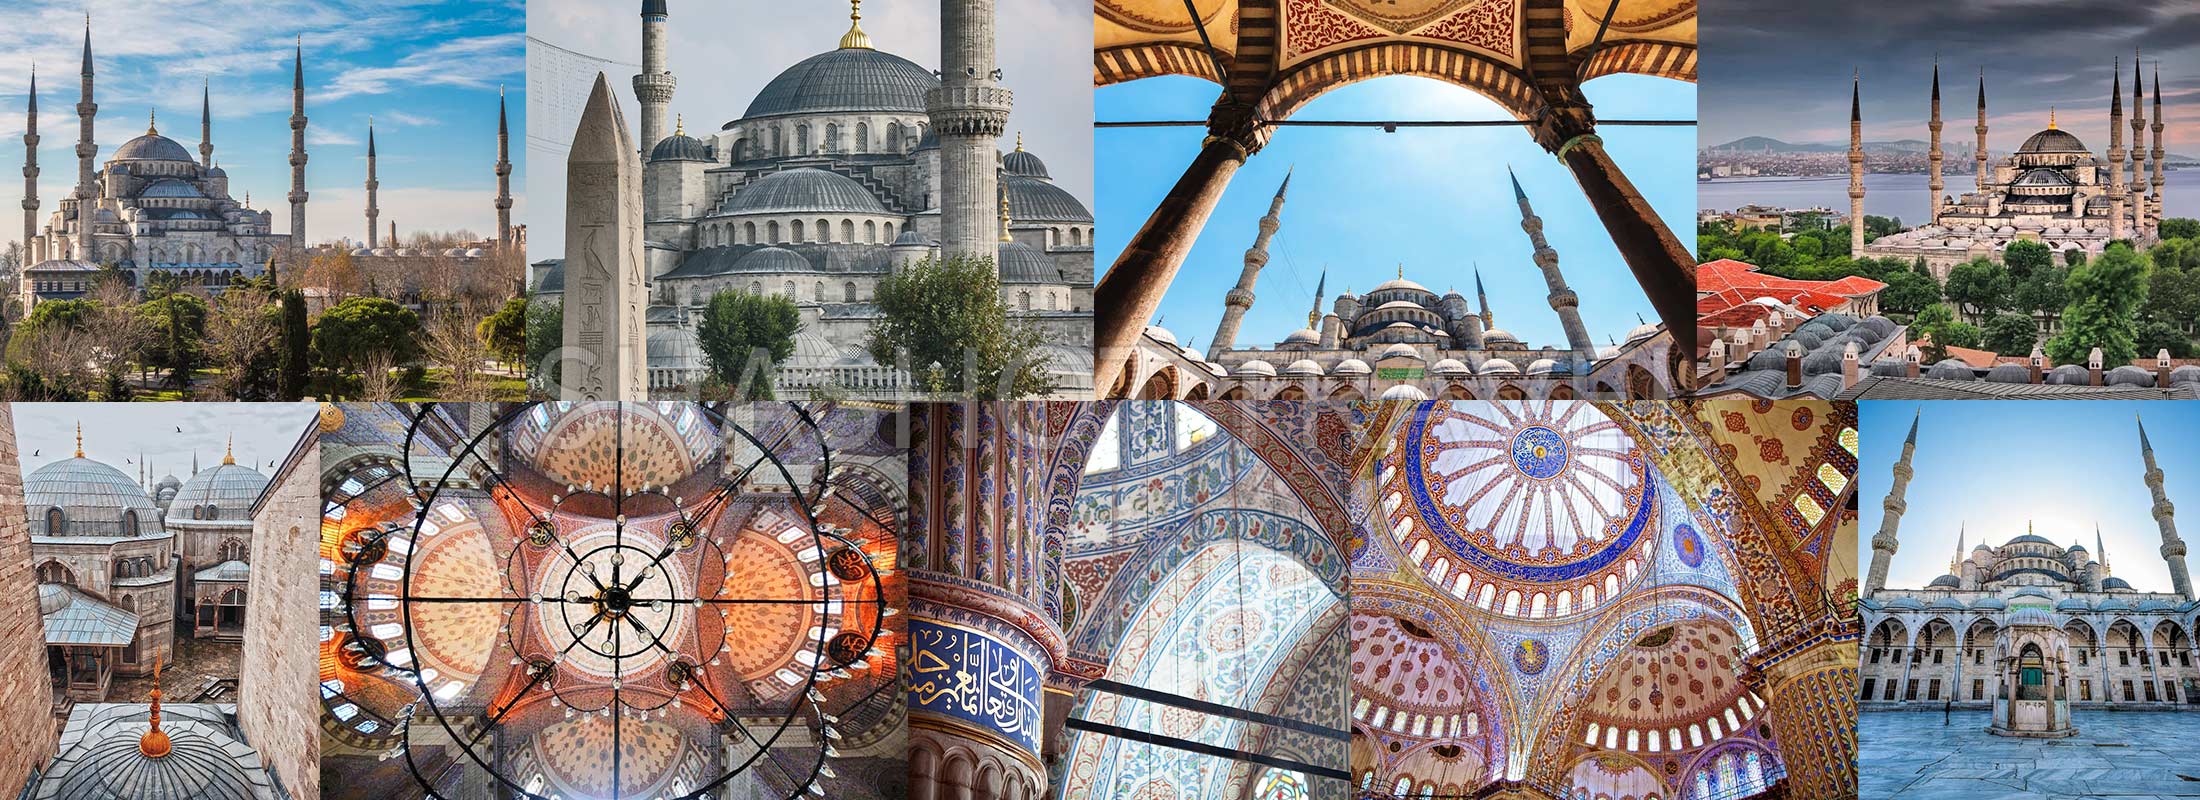 blue-mosque-istanbul-turkey-turkiye-shashot-travel